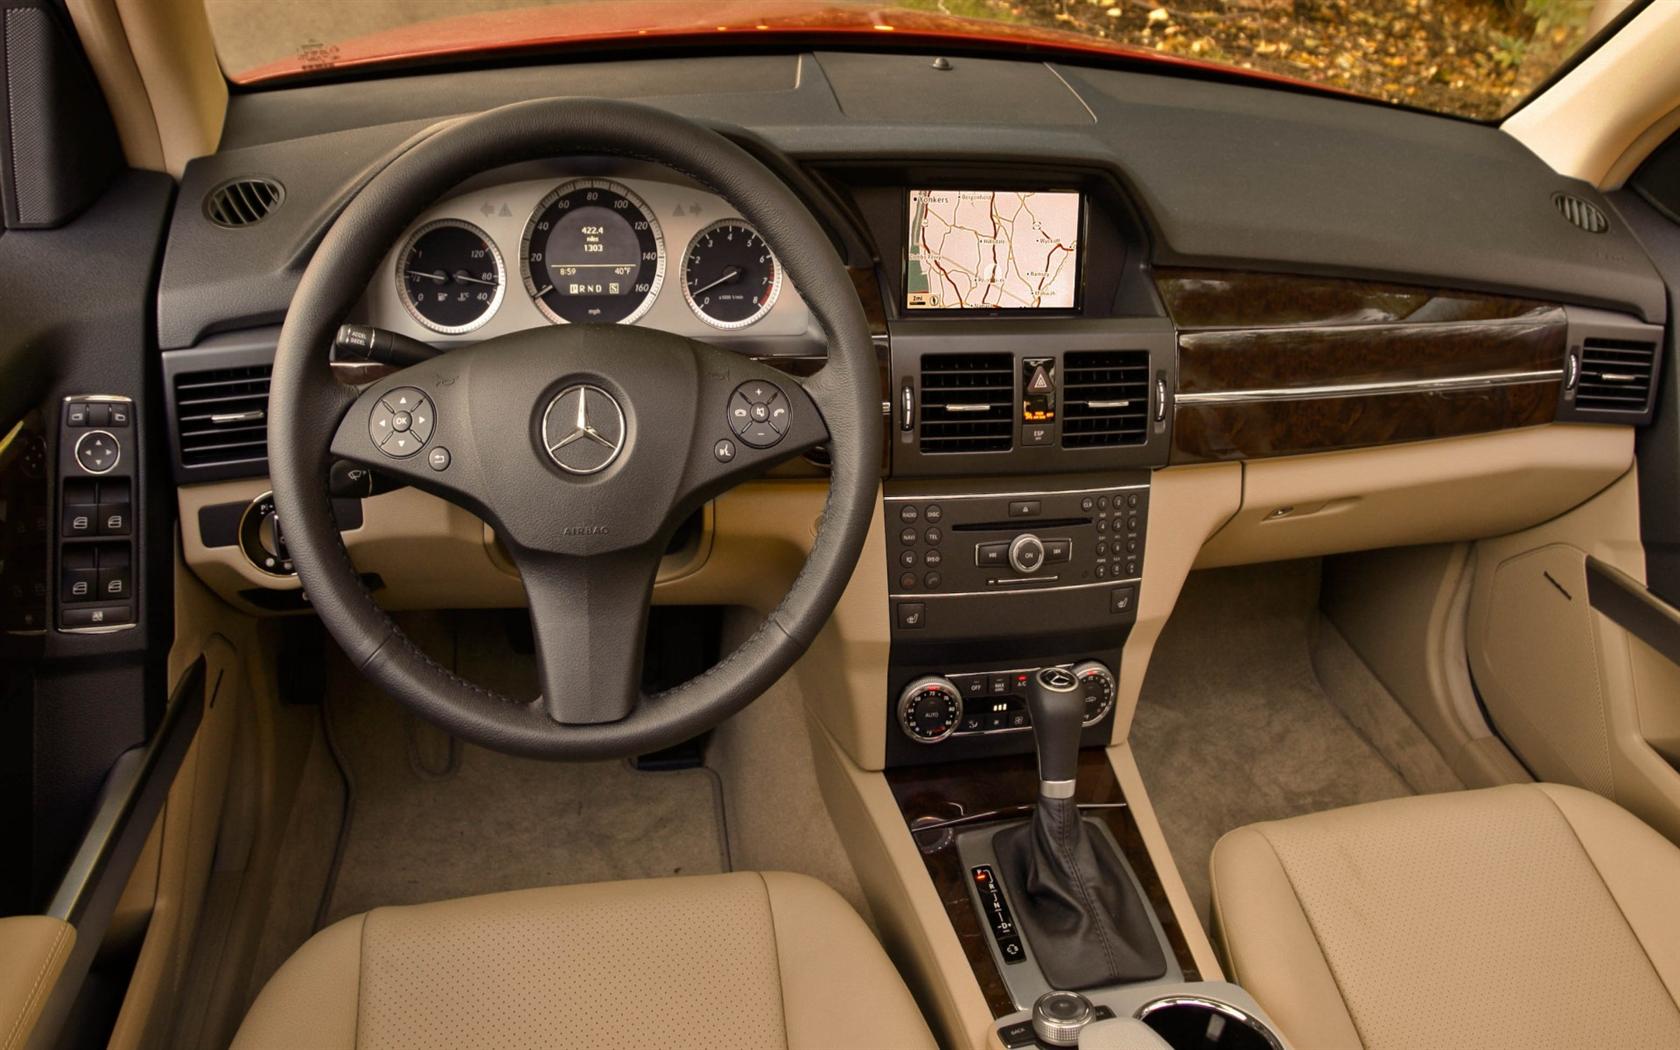 2011 Mercedes-Benz GLK-Class